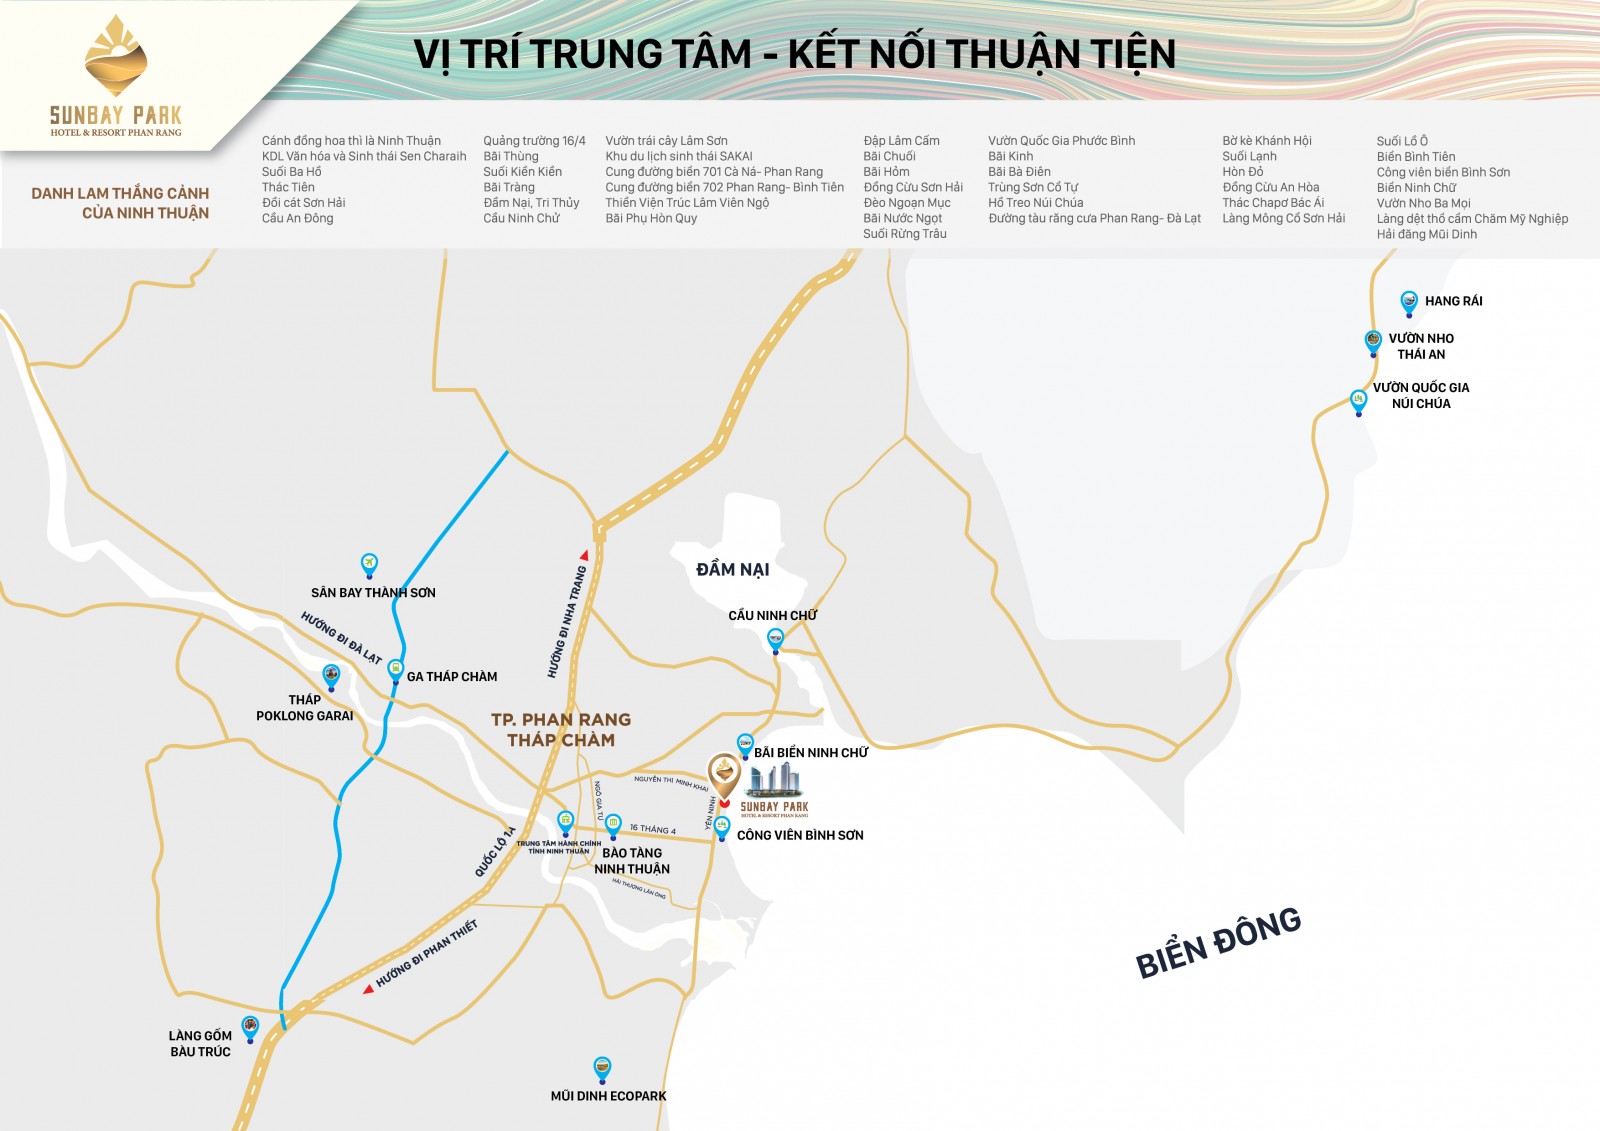 Từ tâm điểm Phan Rang - Tháp Chàm, du khách dễ dàng đến với các điểm du lịch nổi tiếng của 
Ninh Thuận như Vườn quốc gia Núi Chúa.